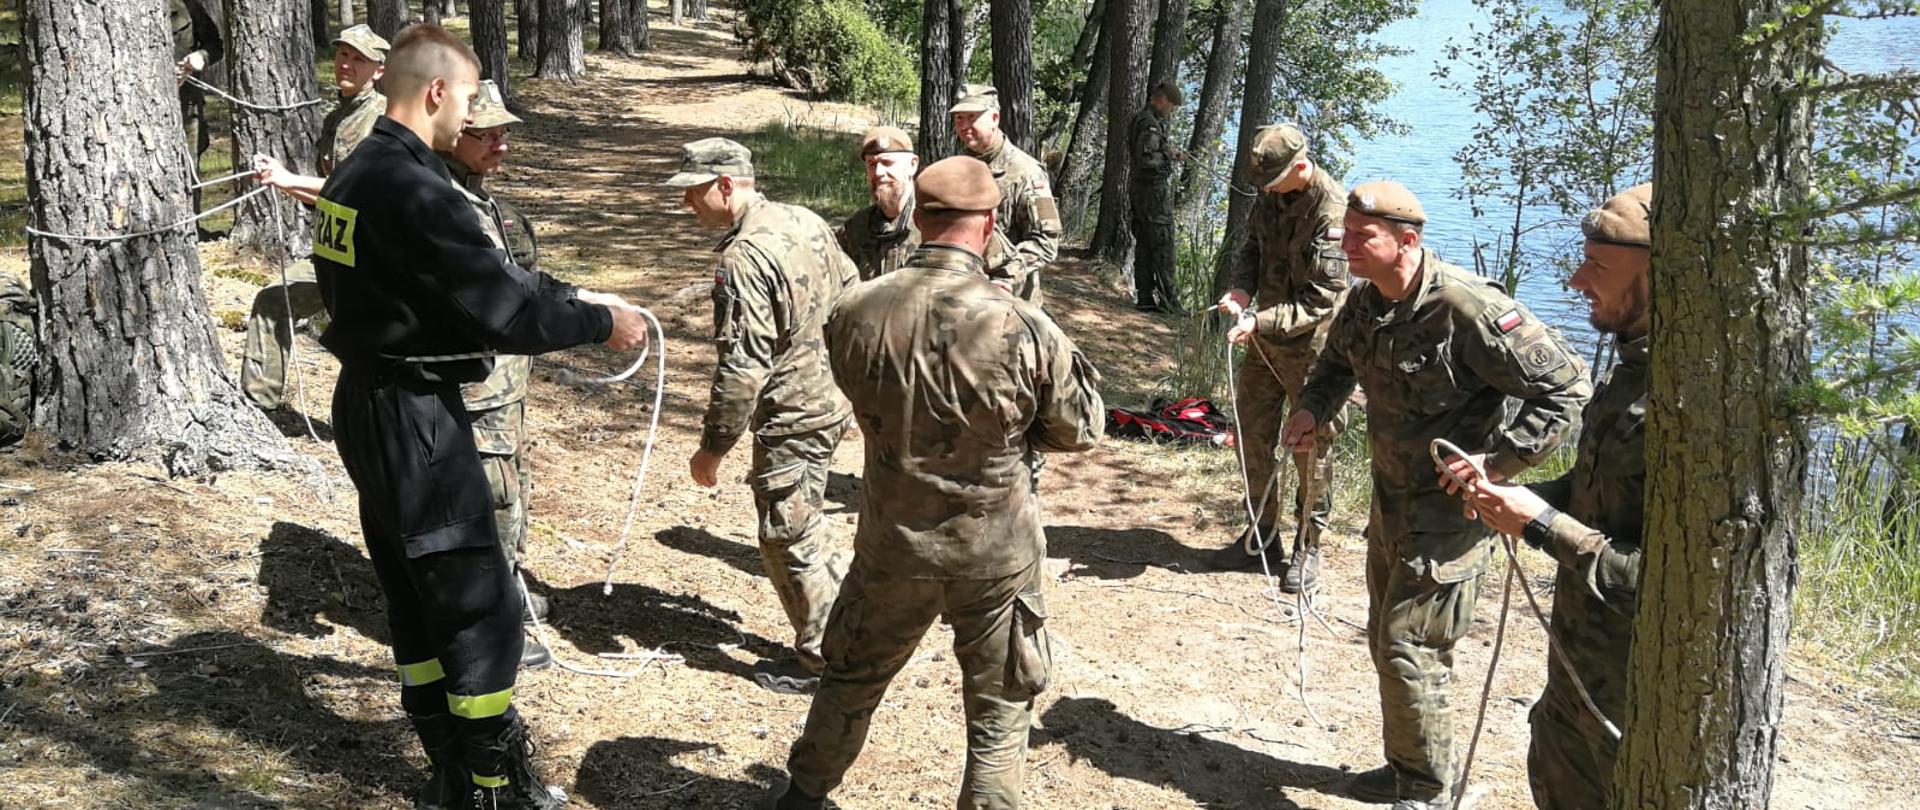 Na zdjęciu widać żołnierzy WOT podczas ćwiczeń.